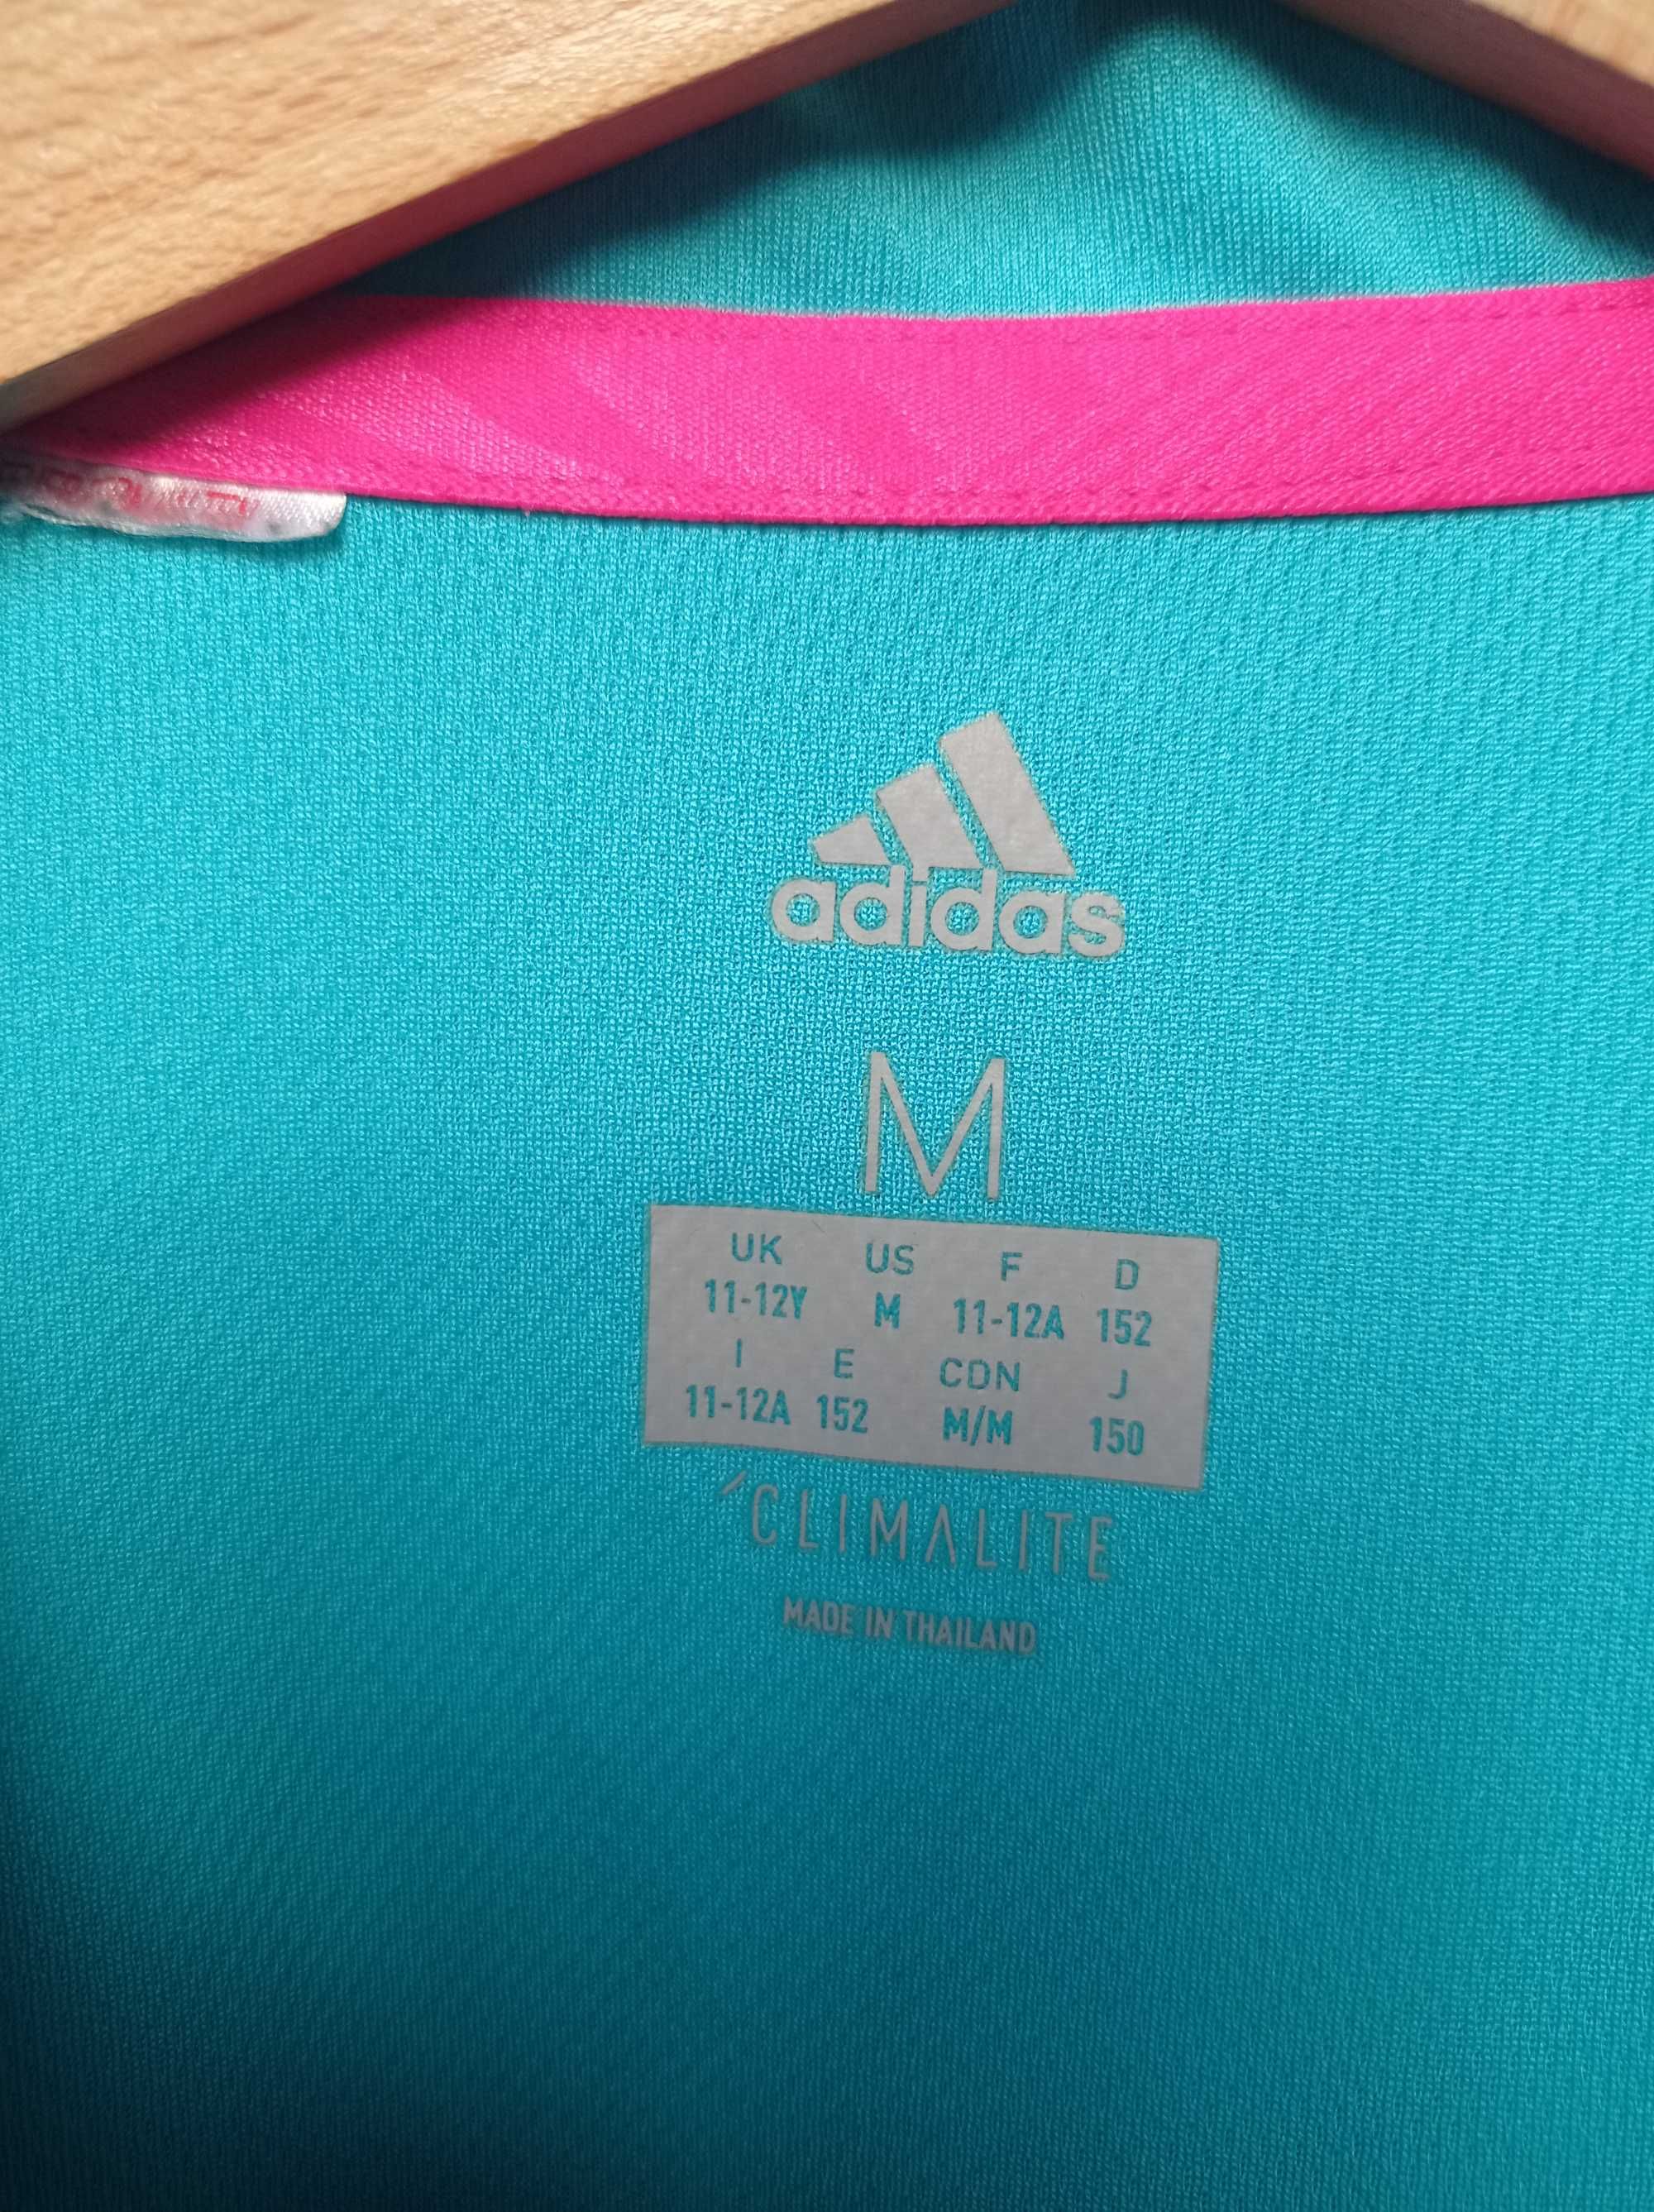 Adidas 11-12 lat koszula sprotowa polo clomalite 152